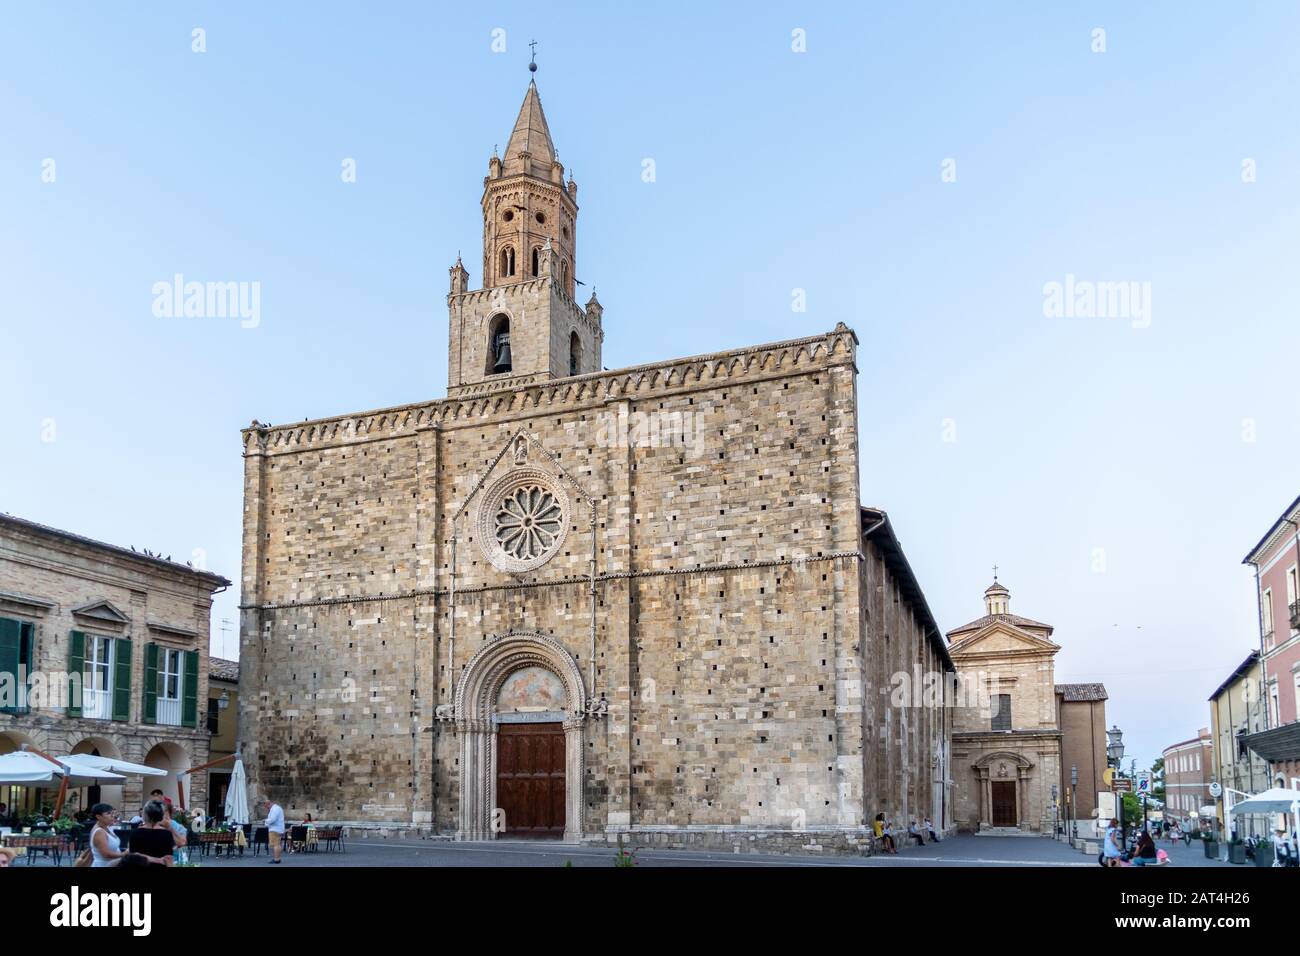 Atri, Teramo, Italien, August 2019: Kathedrale von Atri, Basilika Santa Maria Assunta, Nationaldenkmal seit 1899, Gotische Architektur. Stockfoto